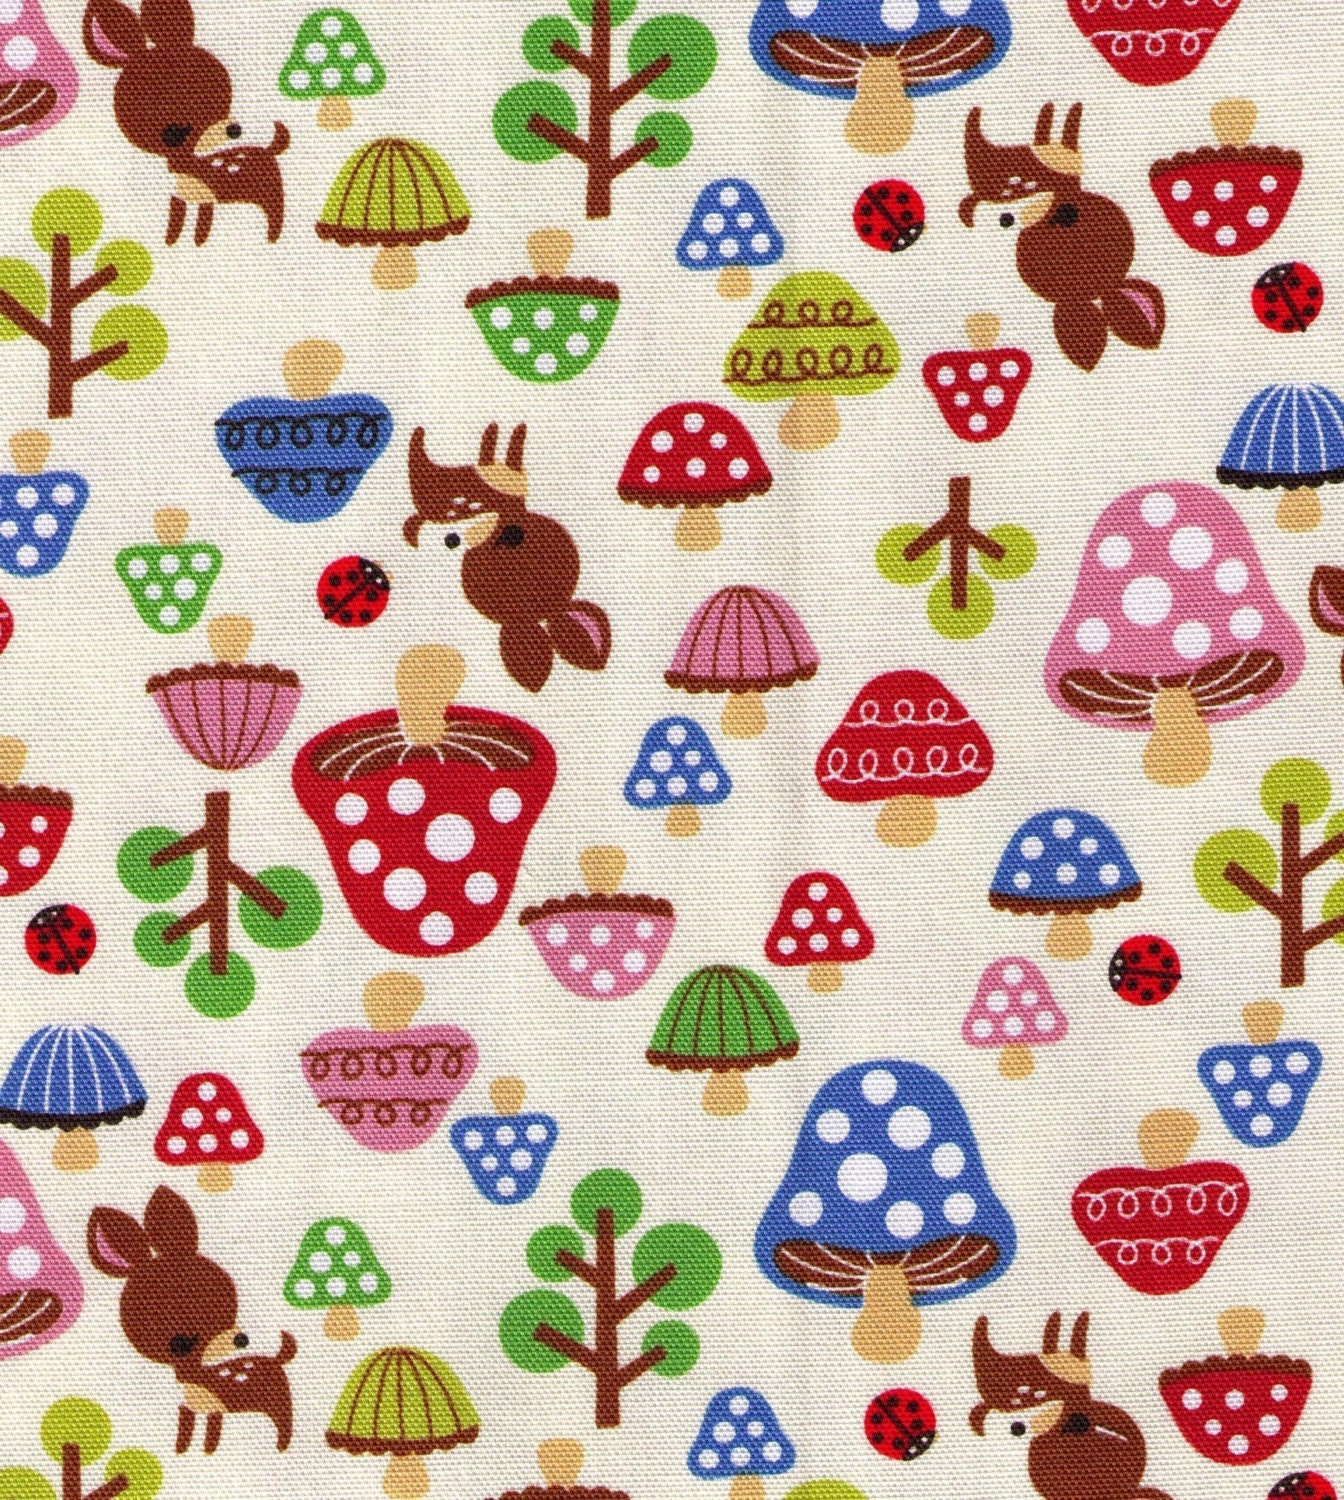 Kokka Deer and Mushrooms Toadstools ladybug - Japanese Import Fabric - FAT QUARTER